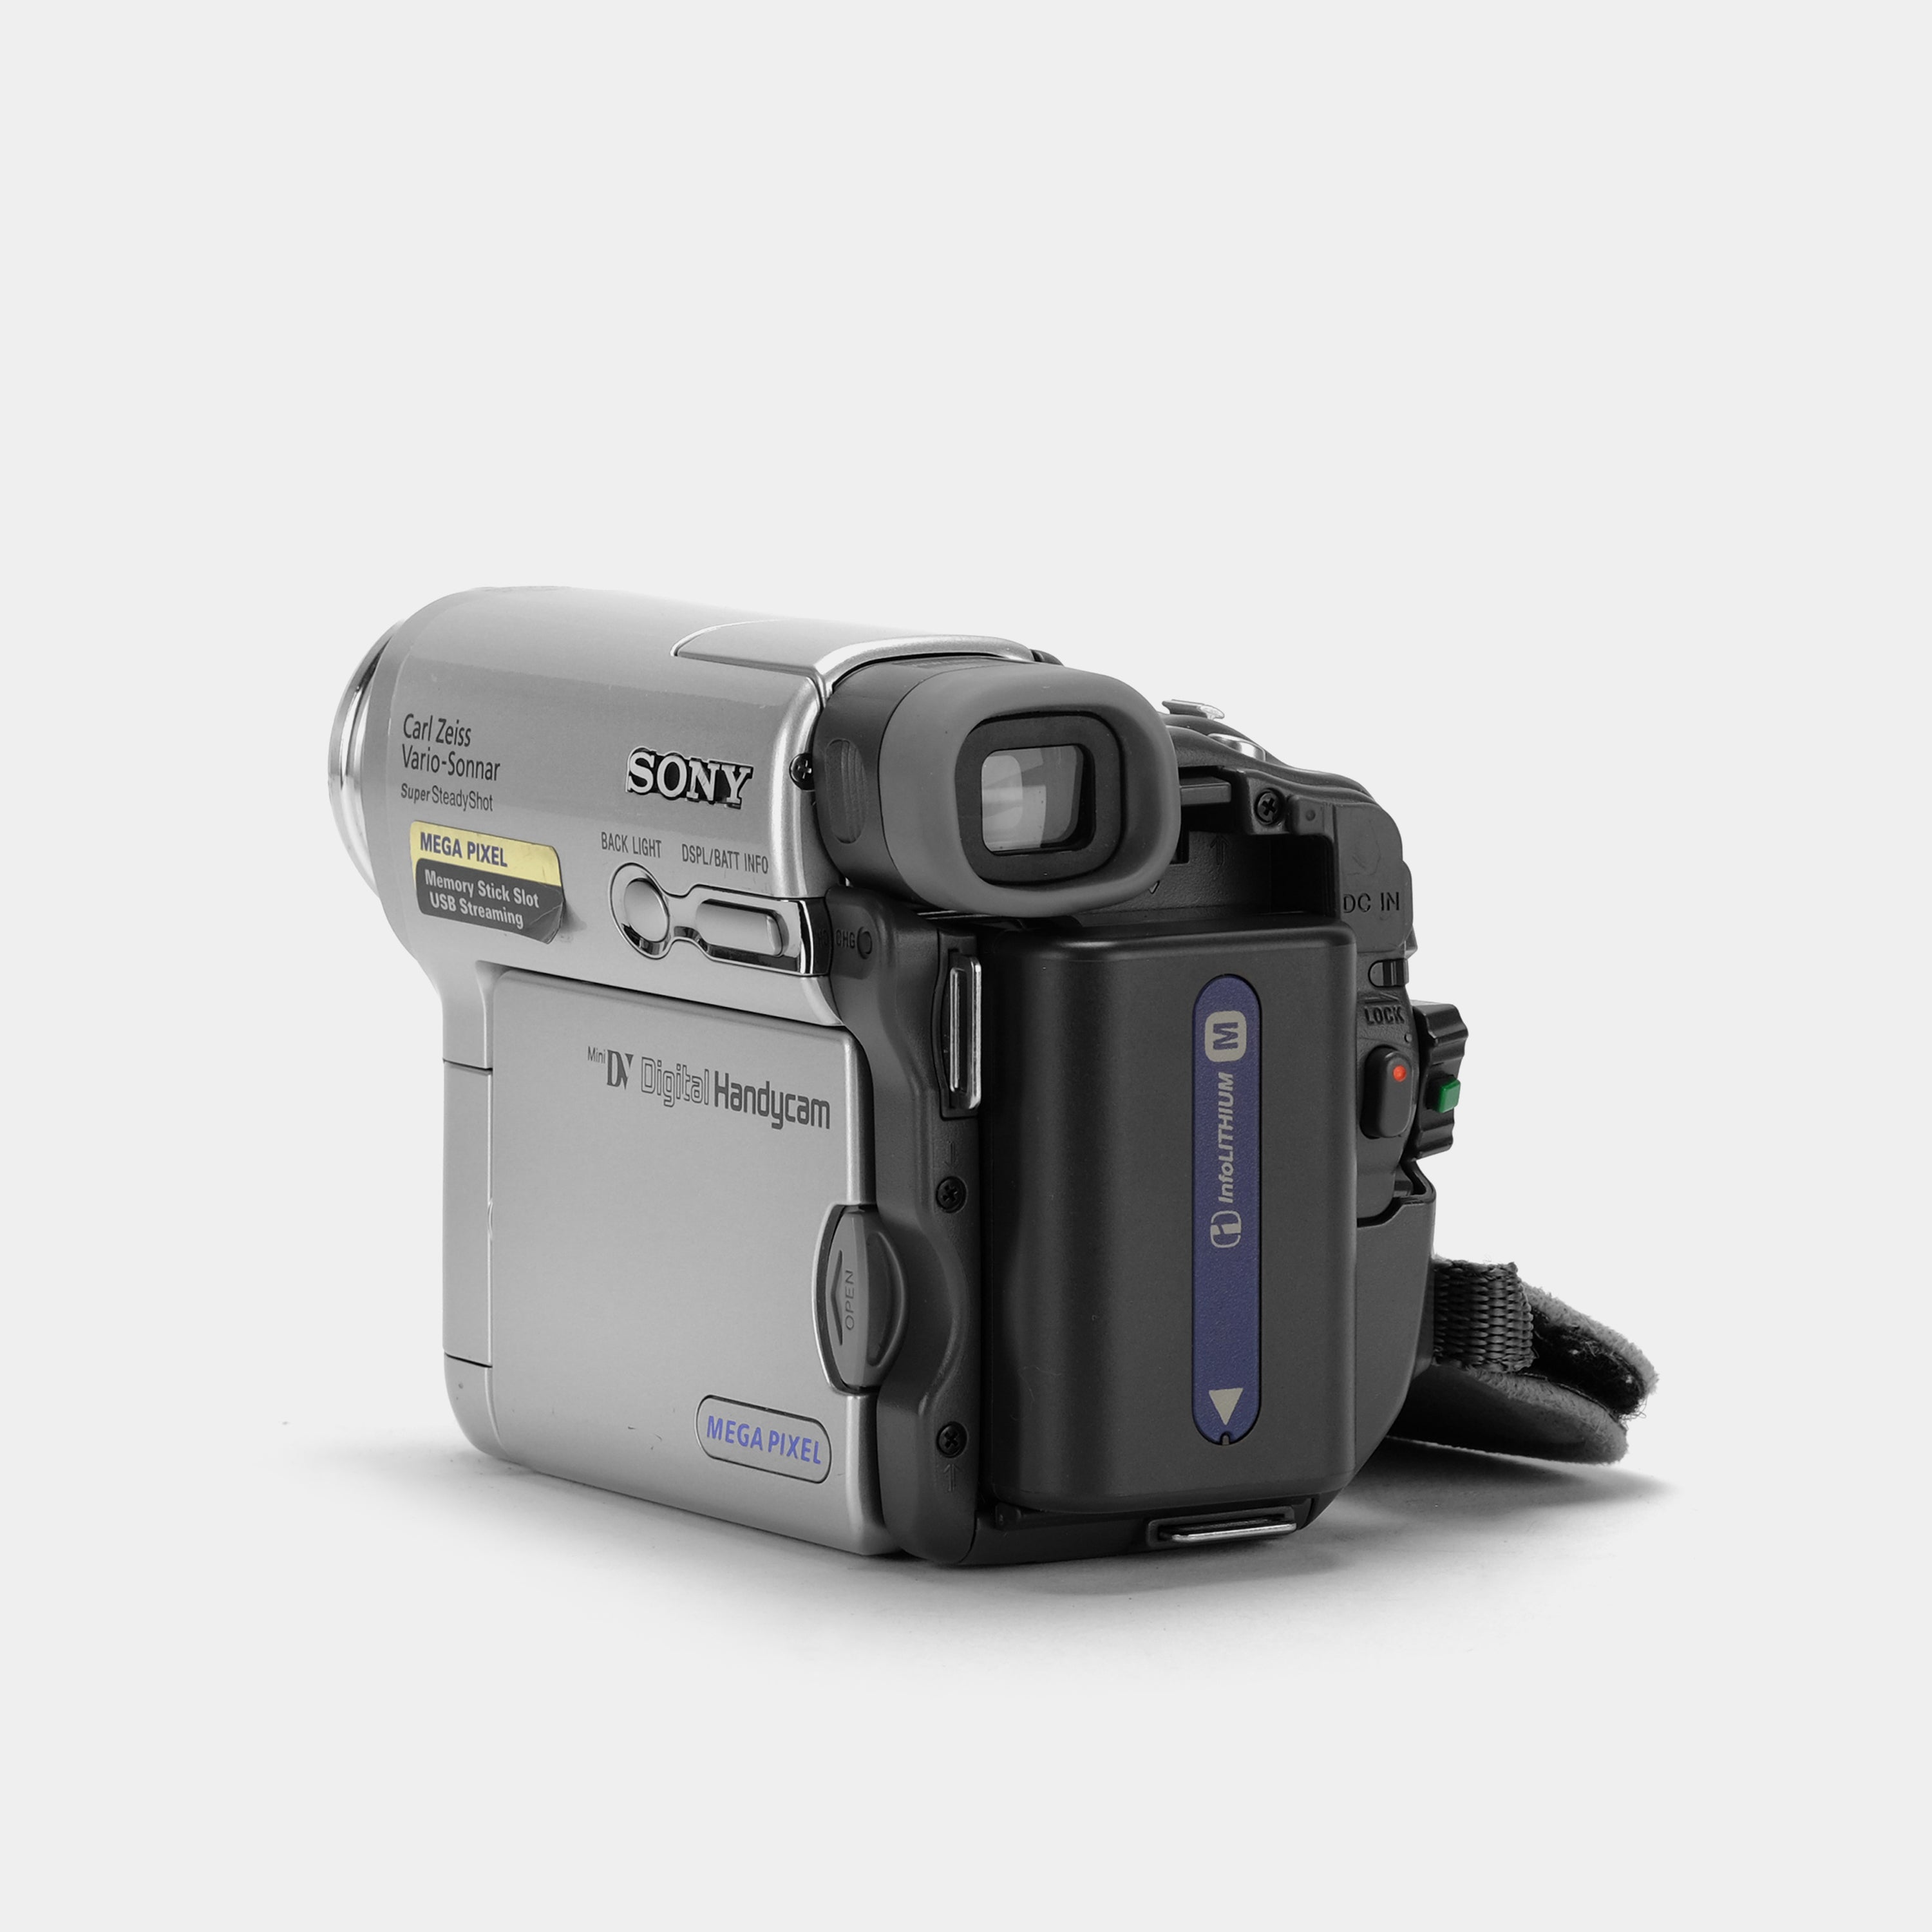 Sony DCR-TRV33 Digital Video Camcorder